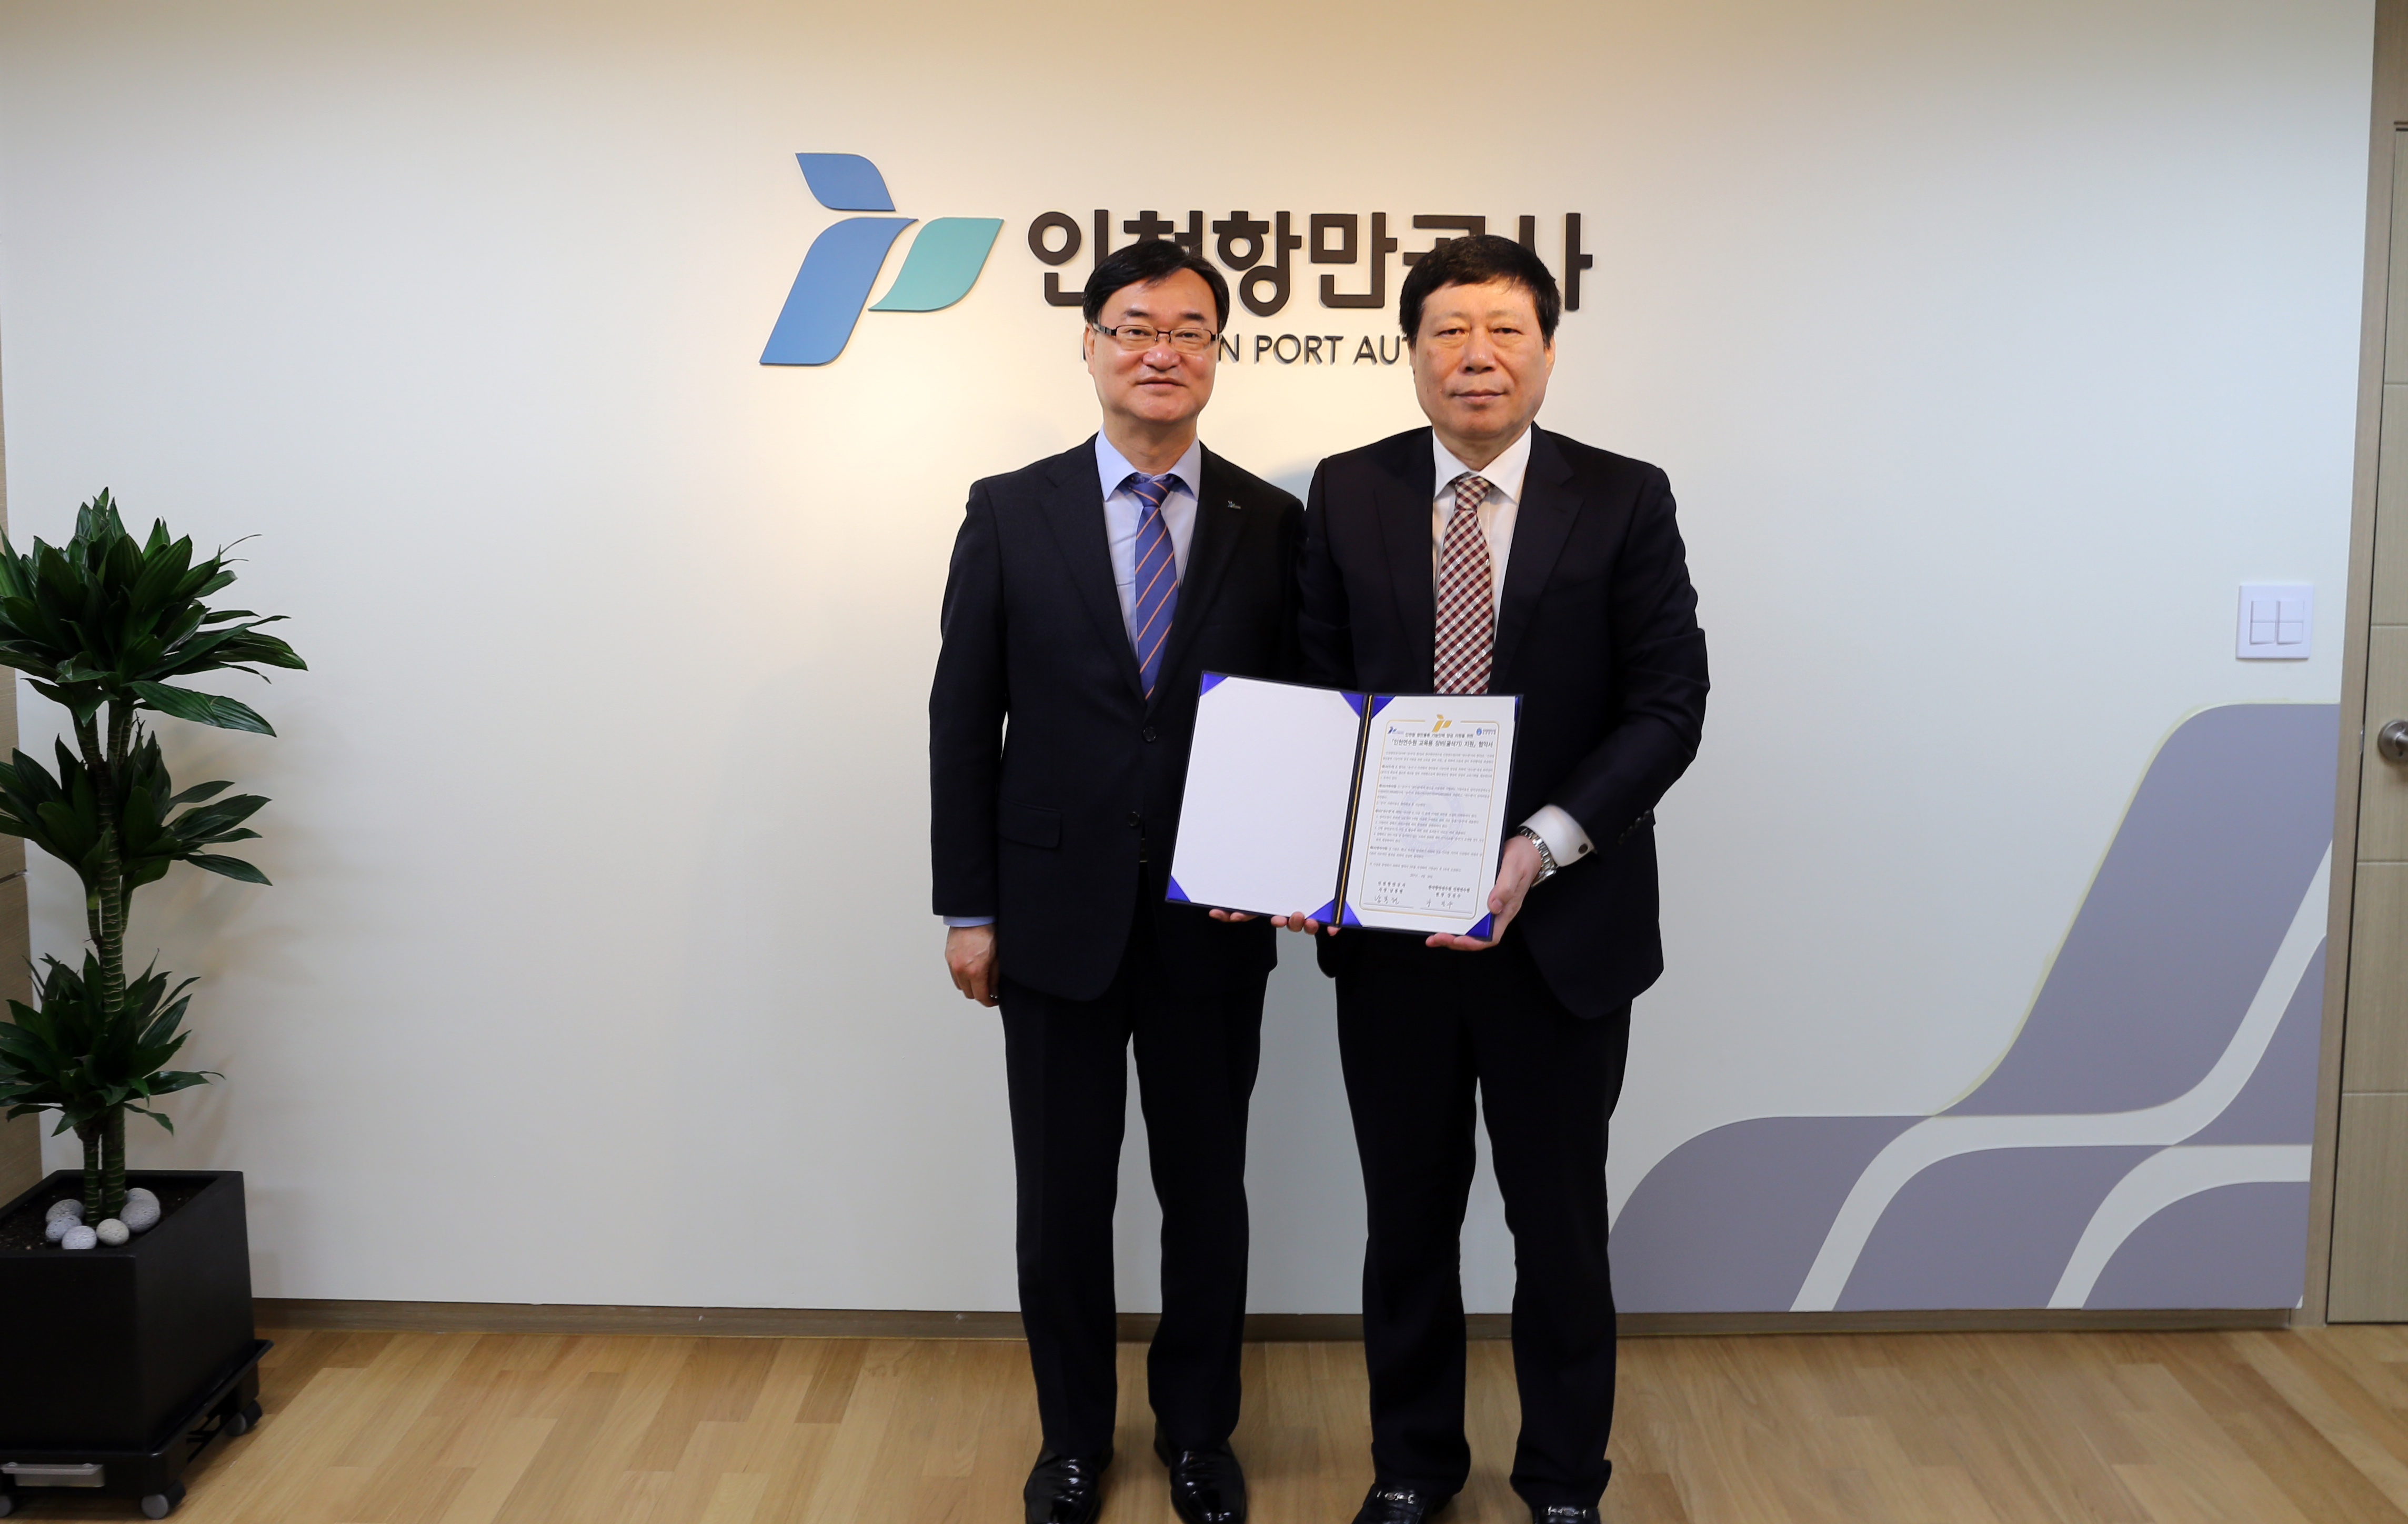 20일 오전 IPA 남봉현 사장과 강진수 인천항만연수원장이 교육장비 지원협약을 체결했다.